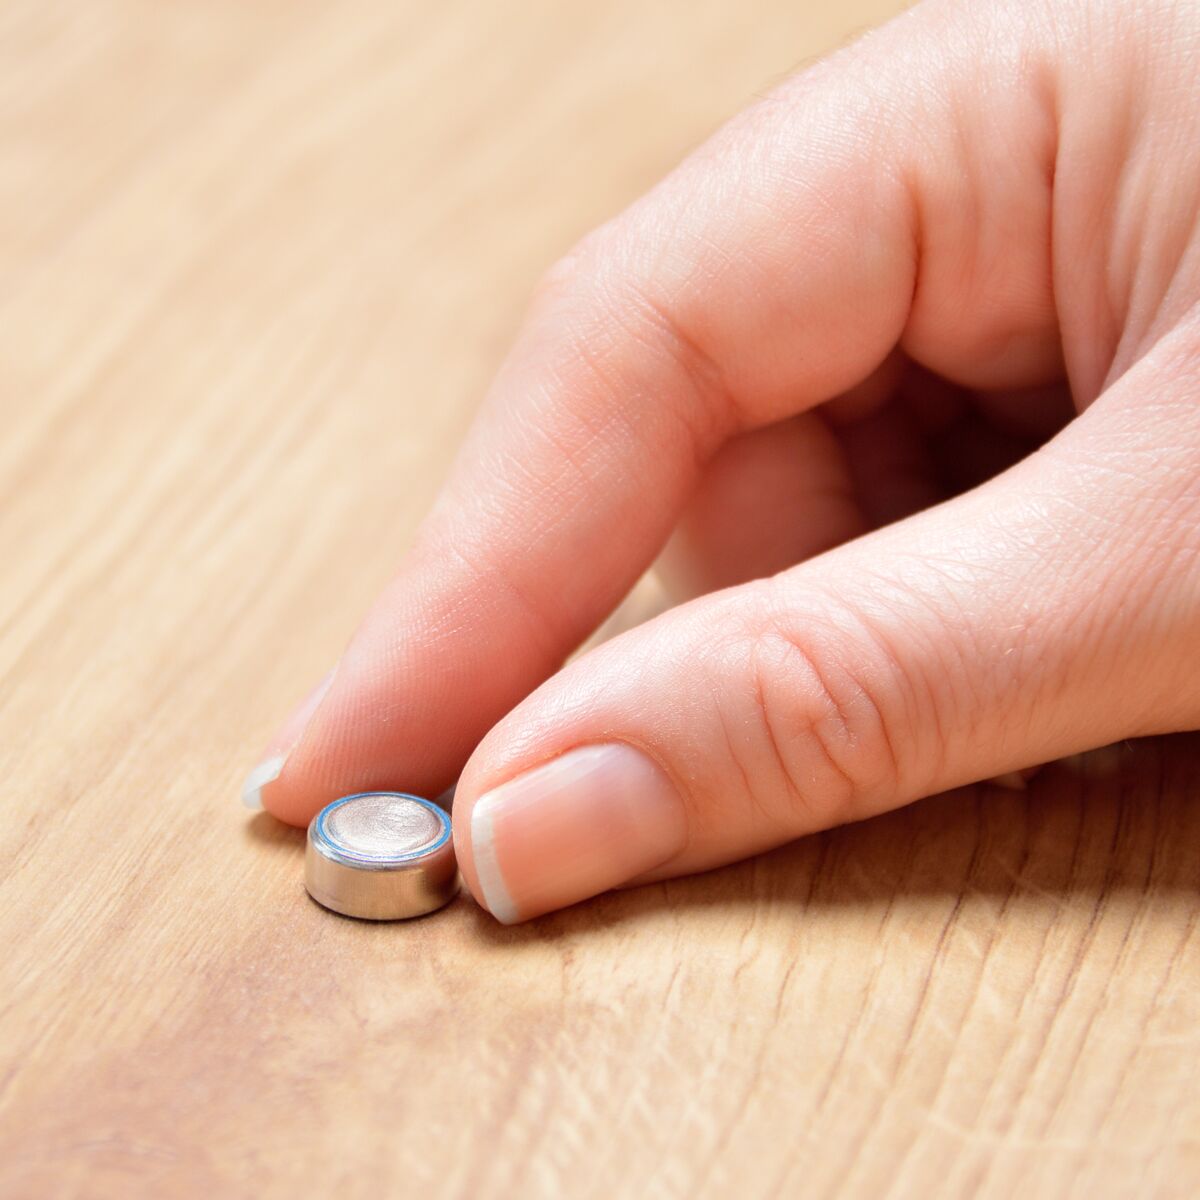 Pourquoi les piles bouton peuvent-elles être mortelles pour les enfants ?